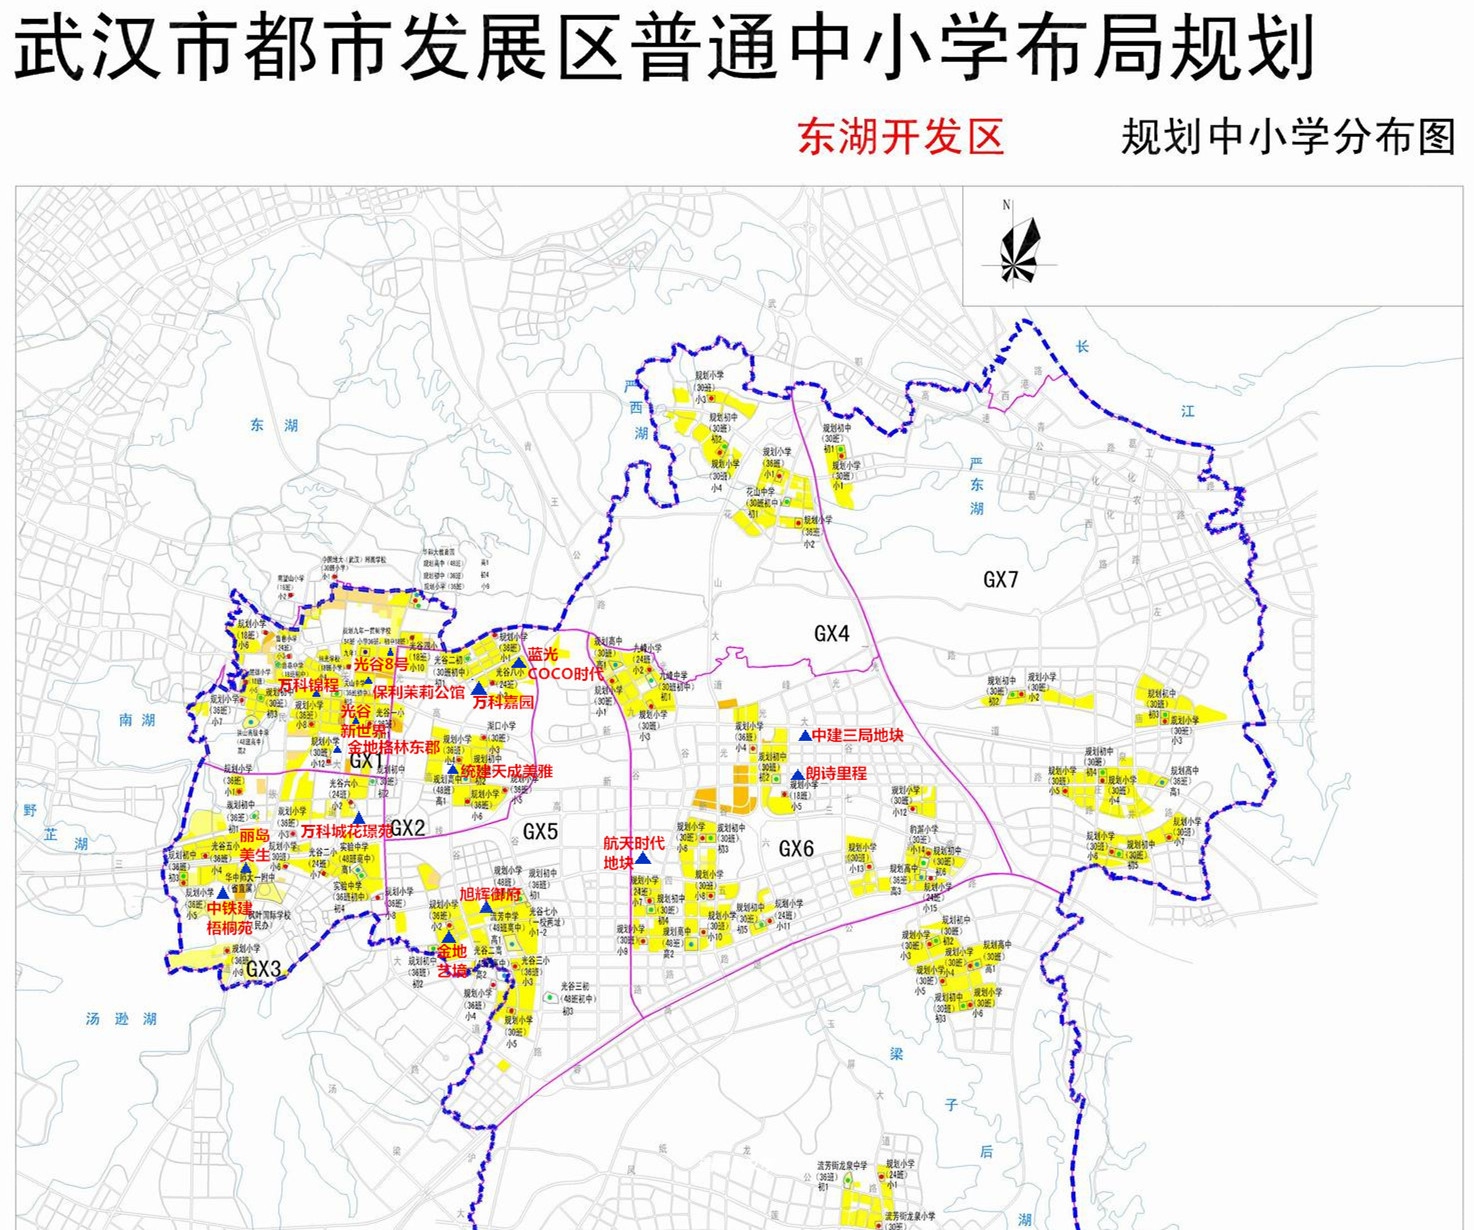 根据(20-2020)武汉市普通中小学布局规划,东湖高新区规划有107所